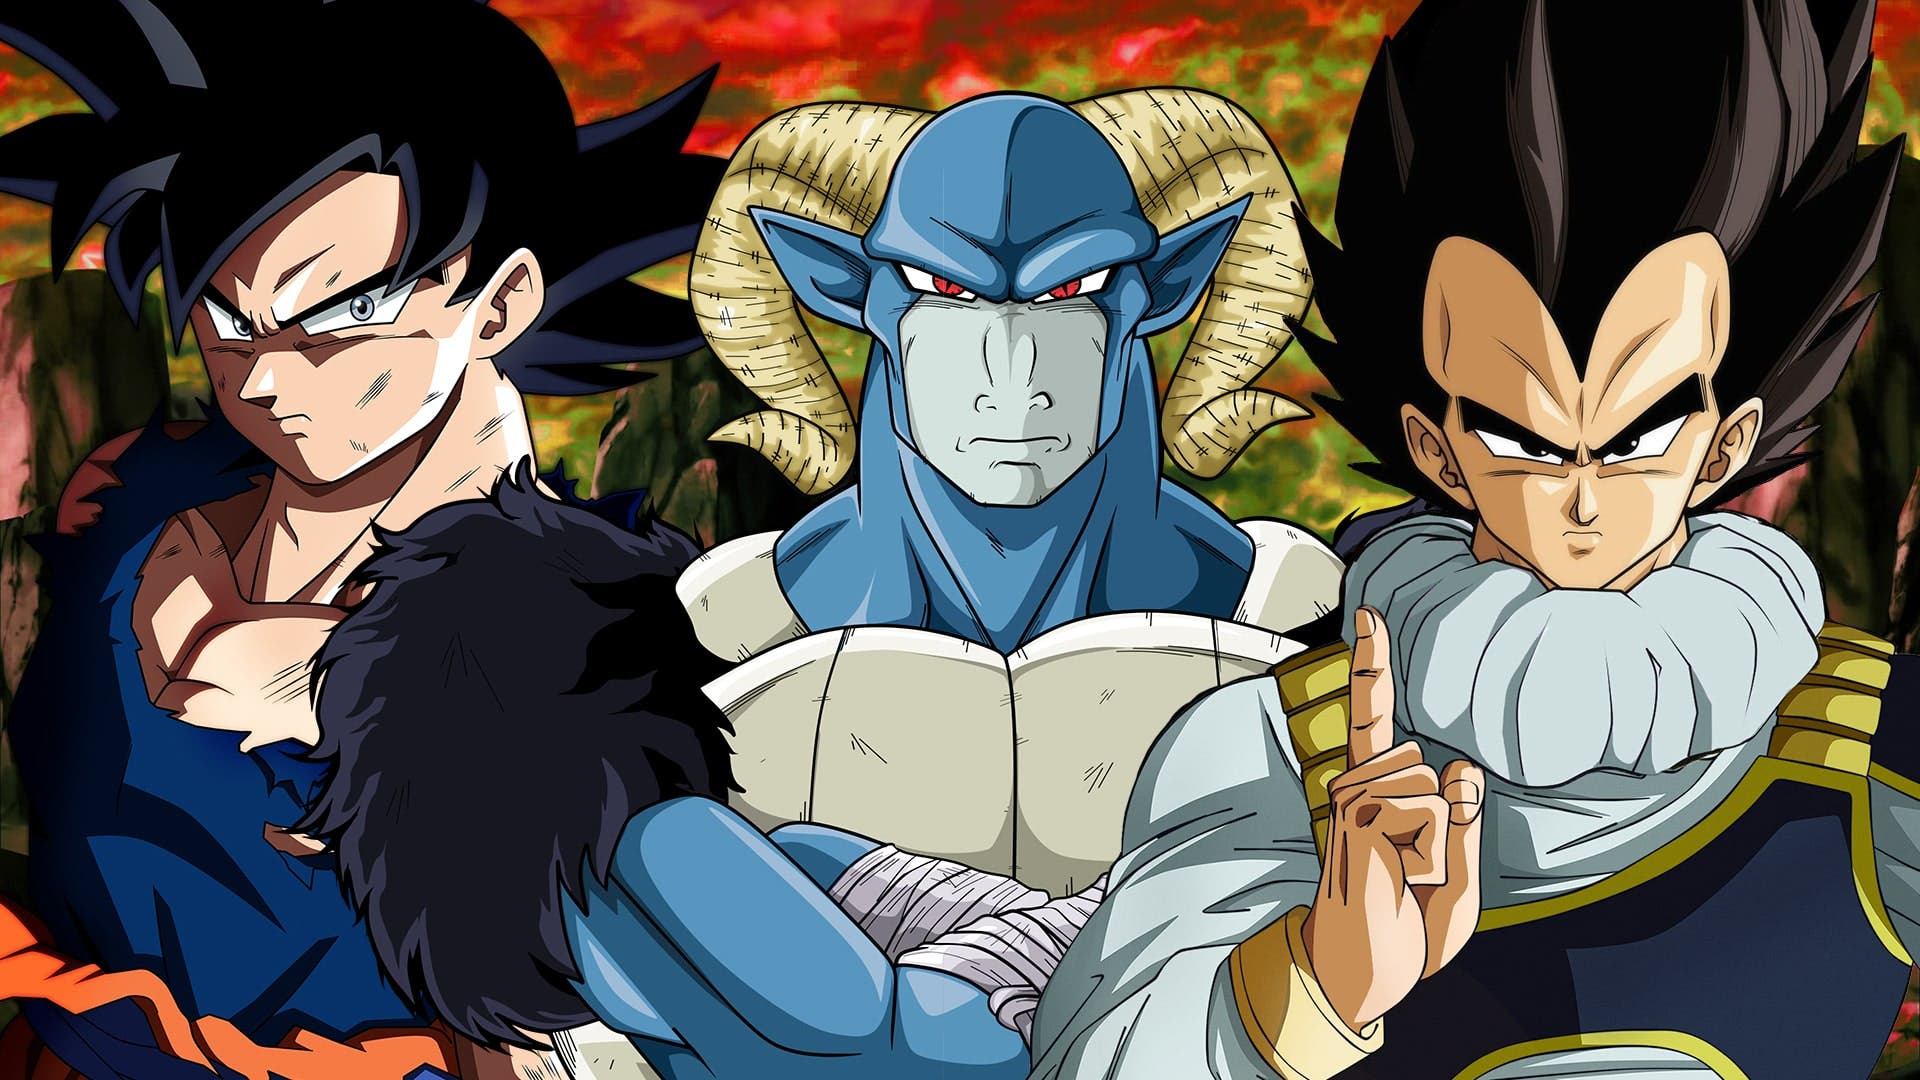 Dragon Ball Super: La espectacular portada de VJump con Goku, Vegeta y Moro  como protagonistas